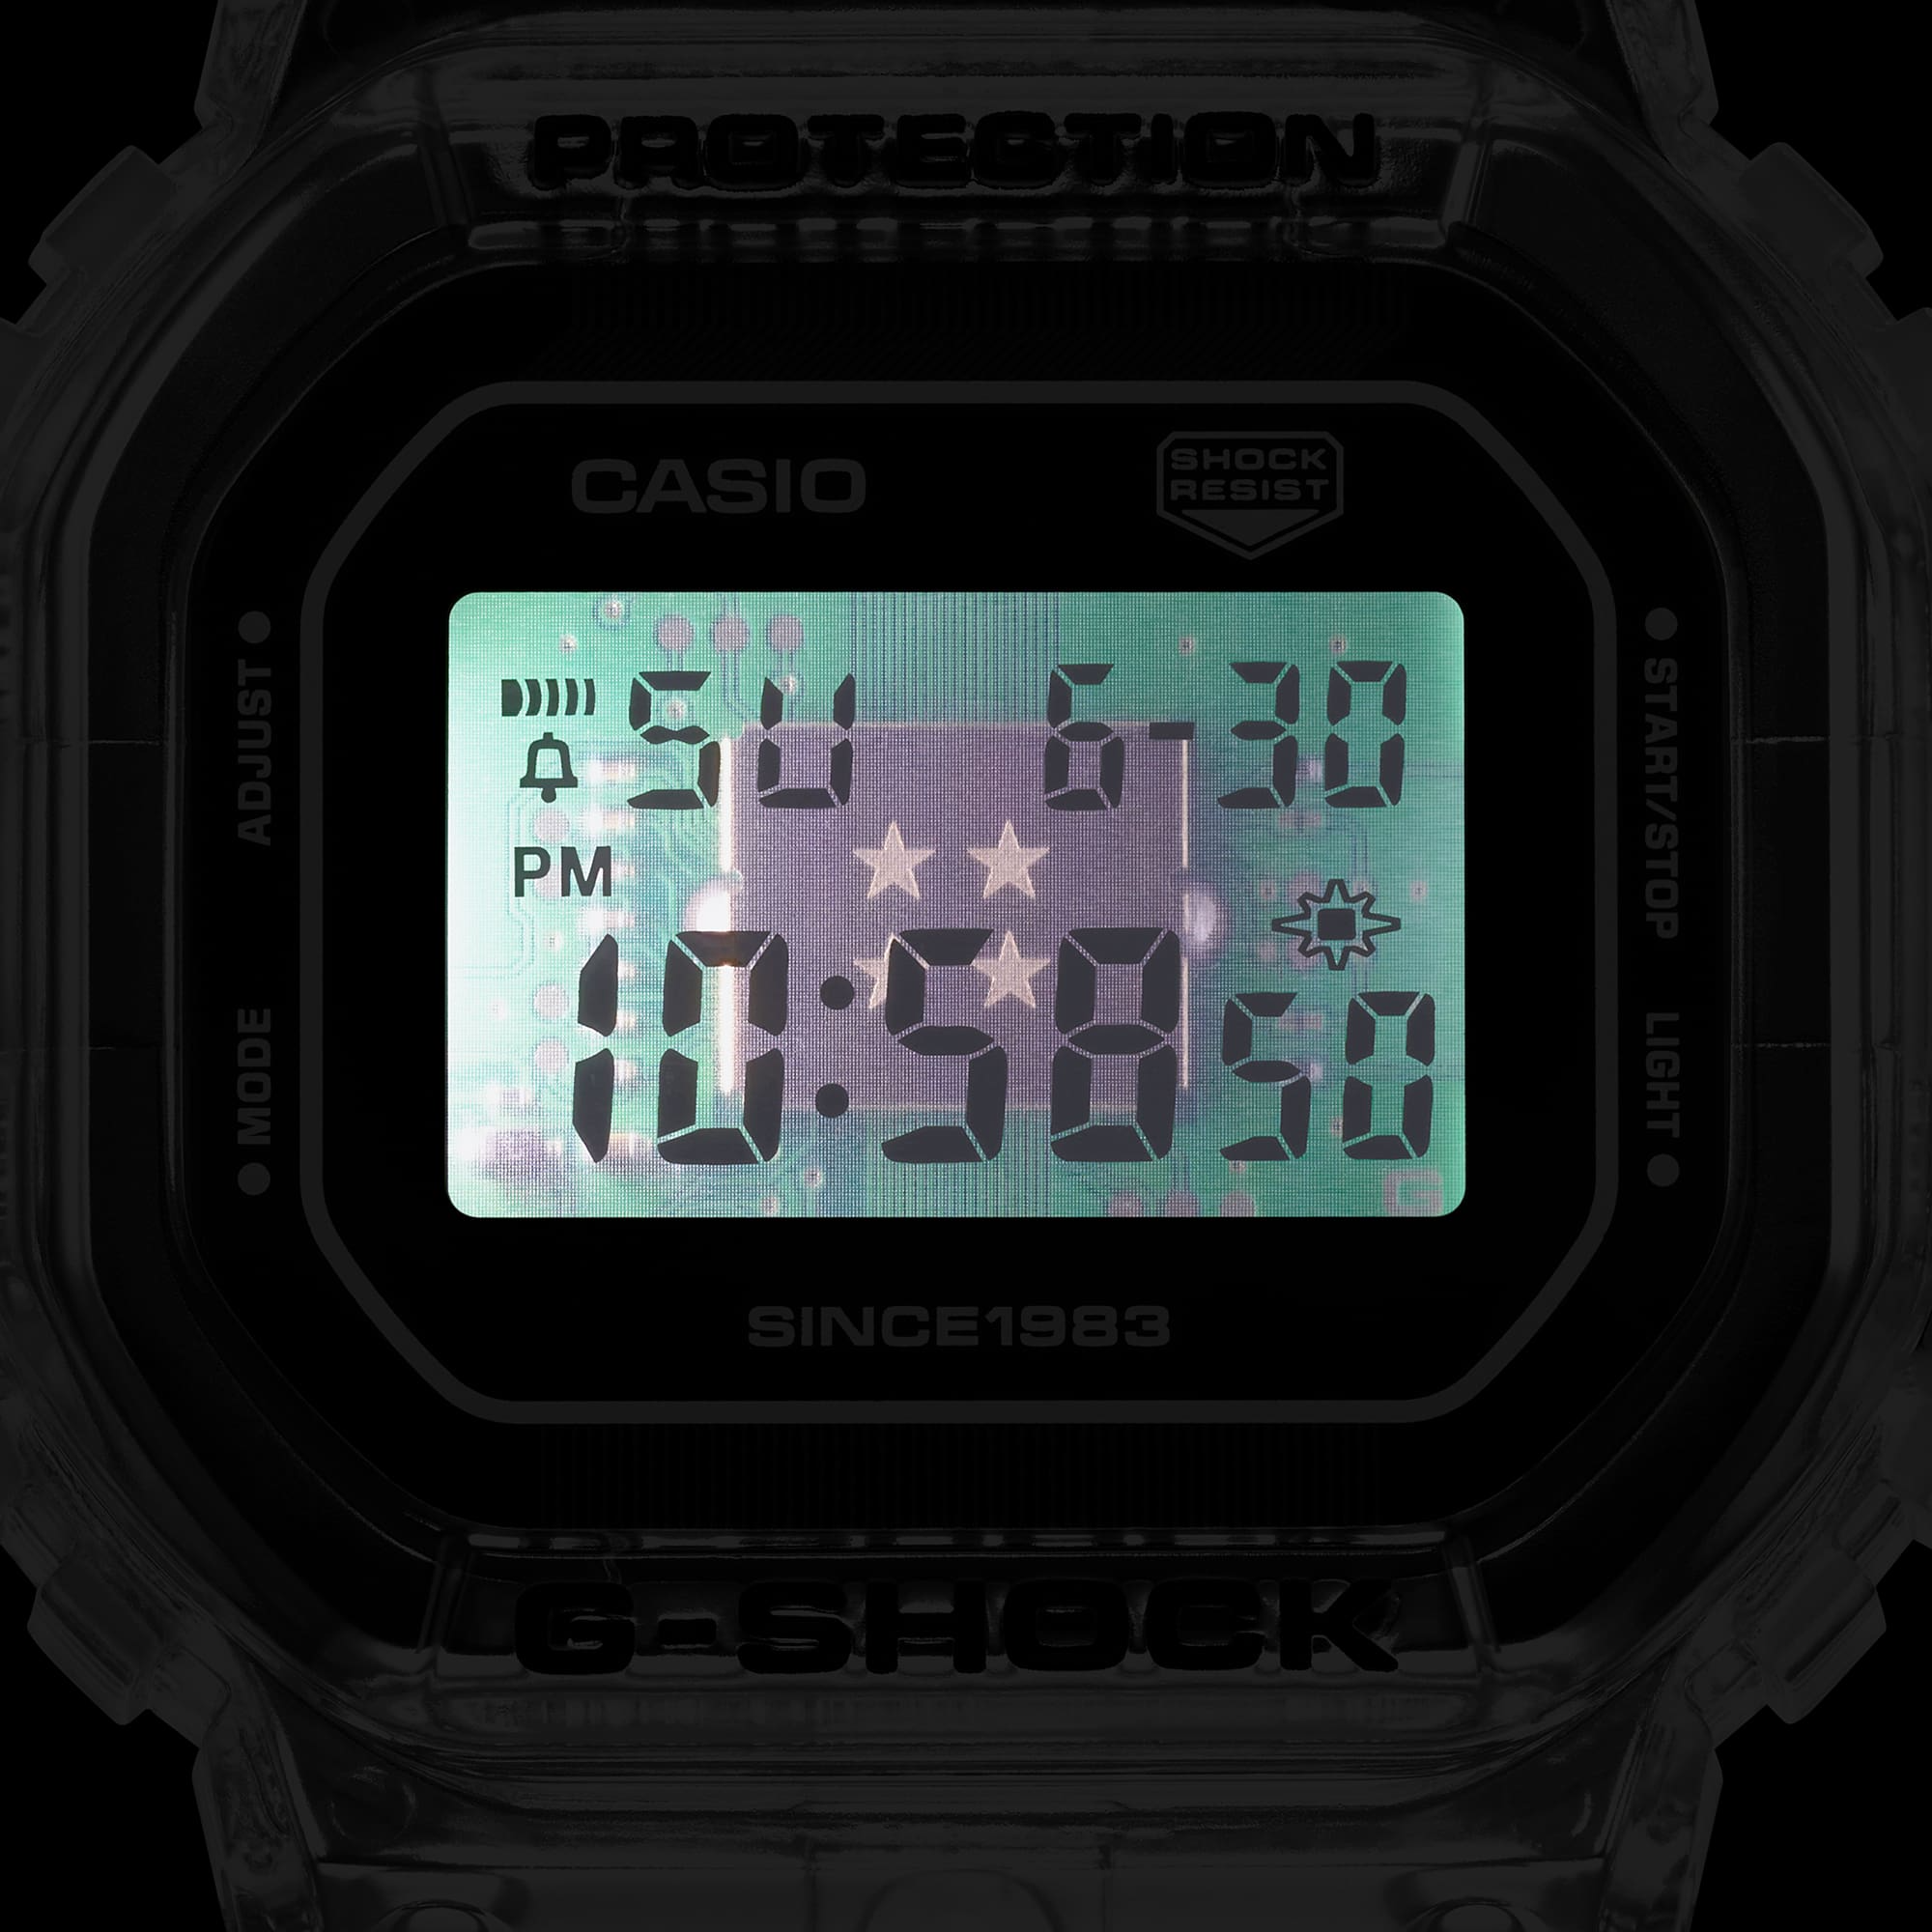 Đồng Hồ Casio G-Shock DW-6940RX-7DR Chính Hãng